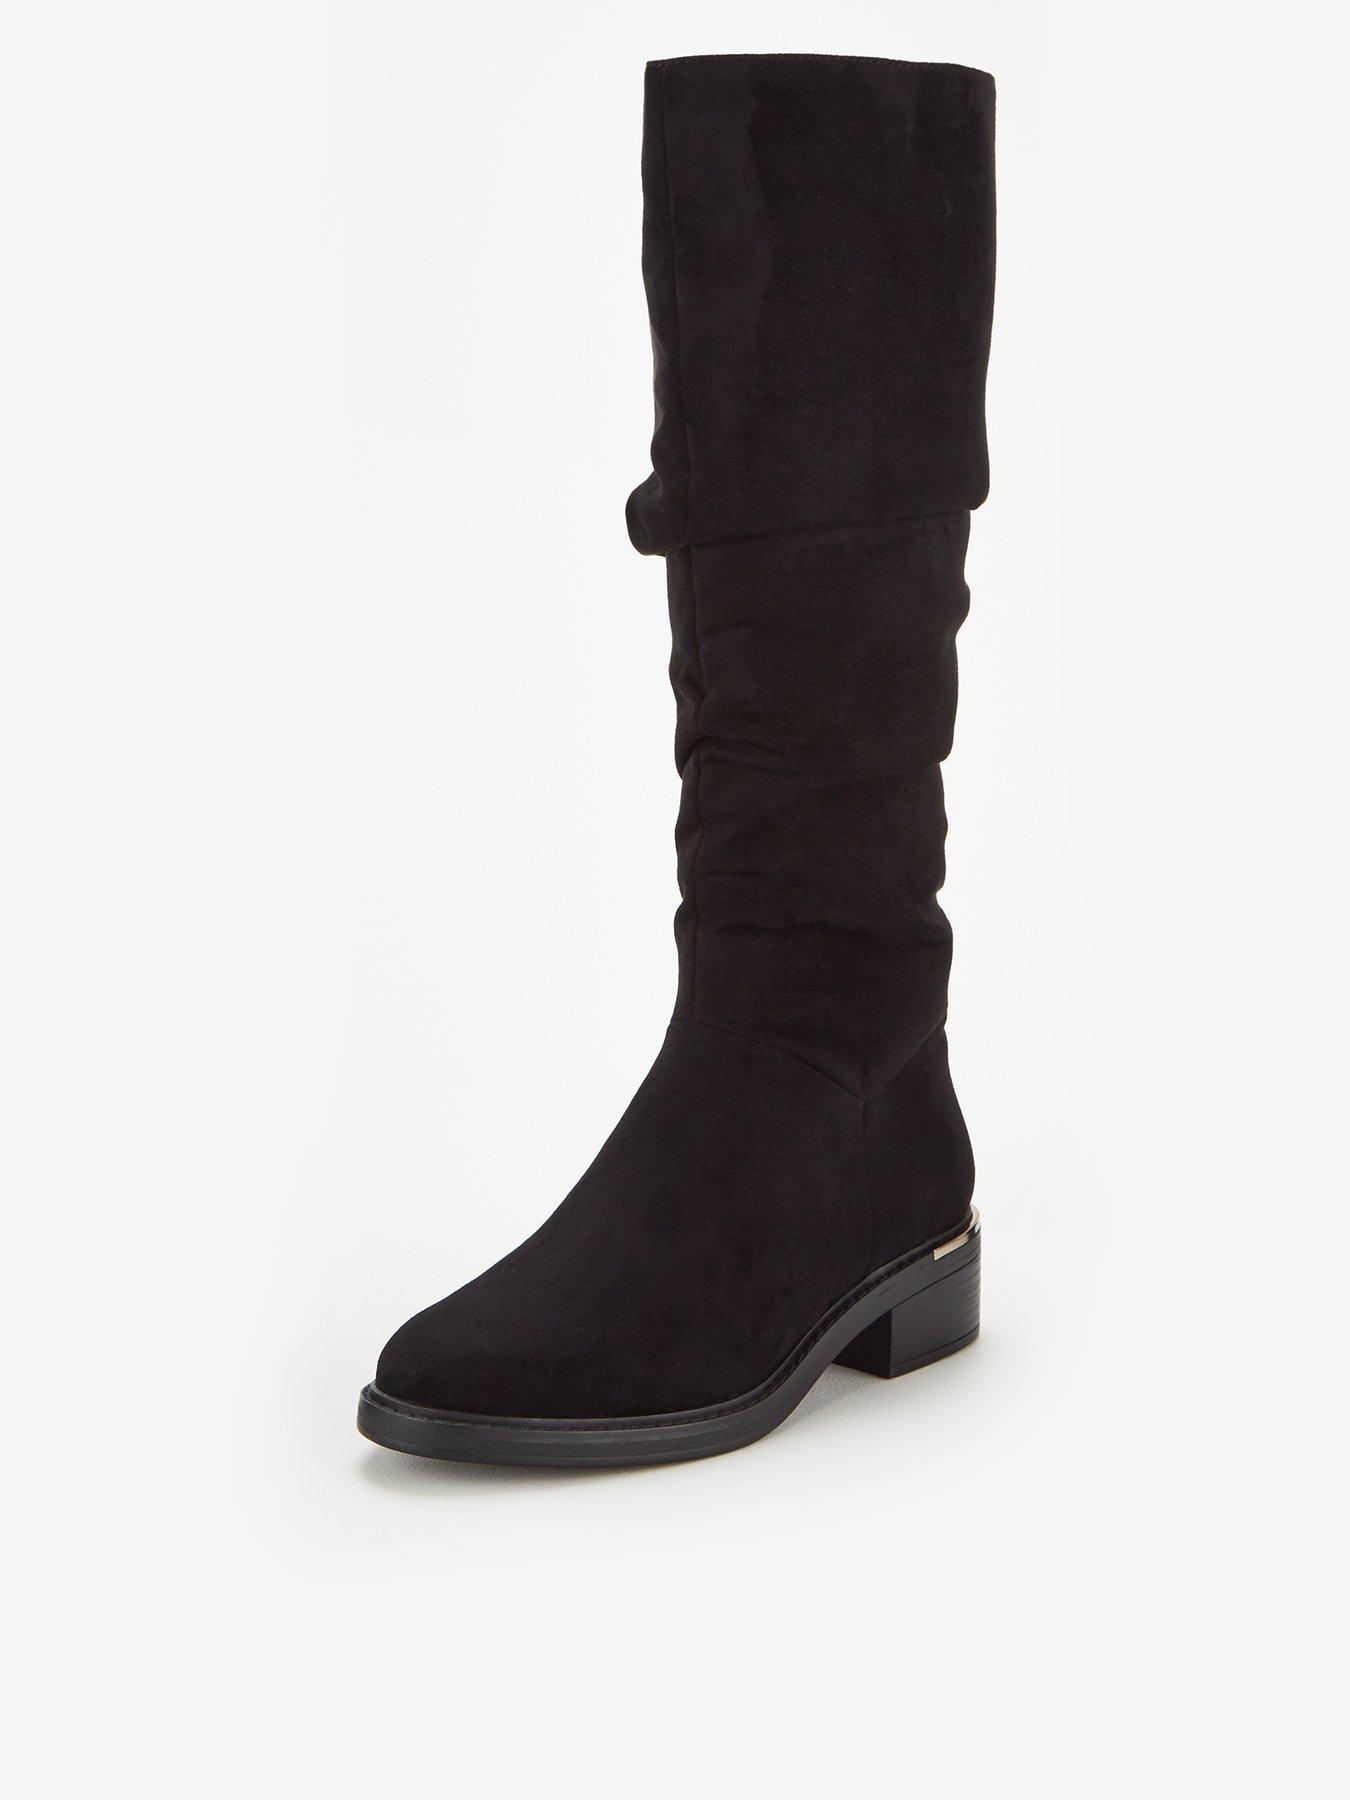 women's suede knee high boots uk